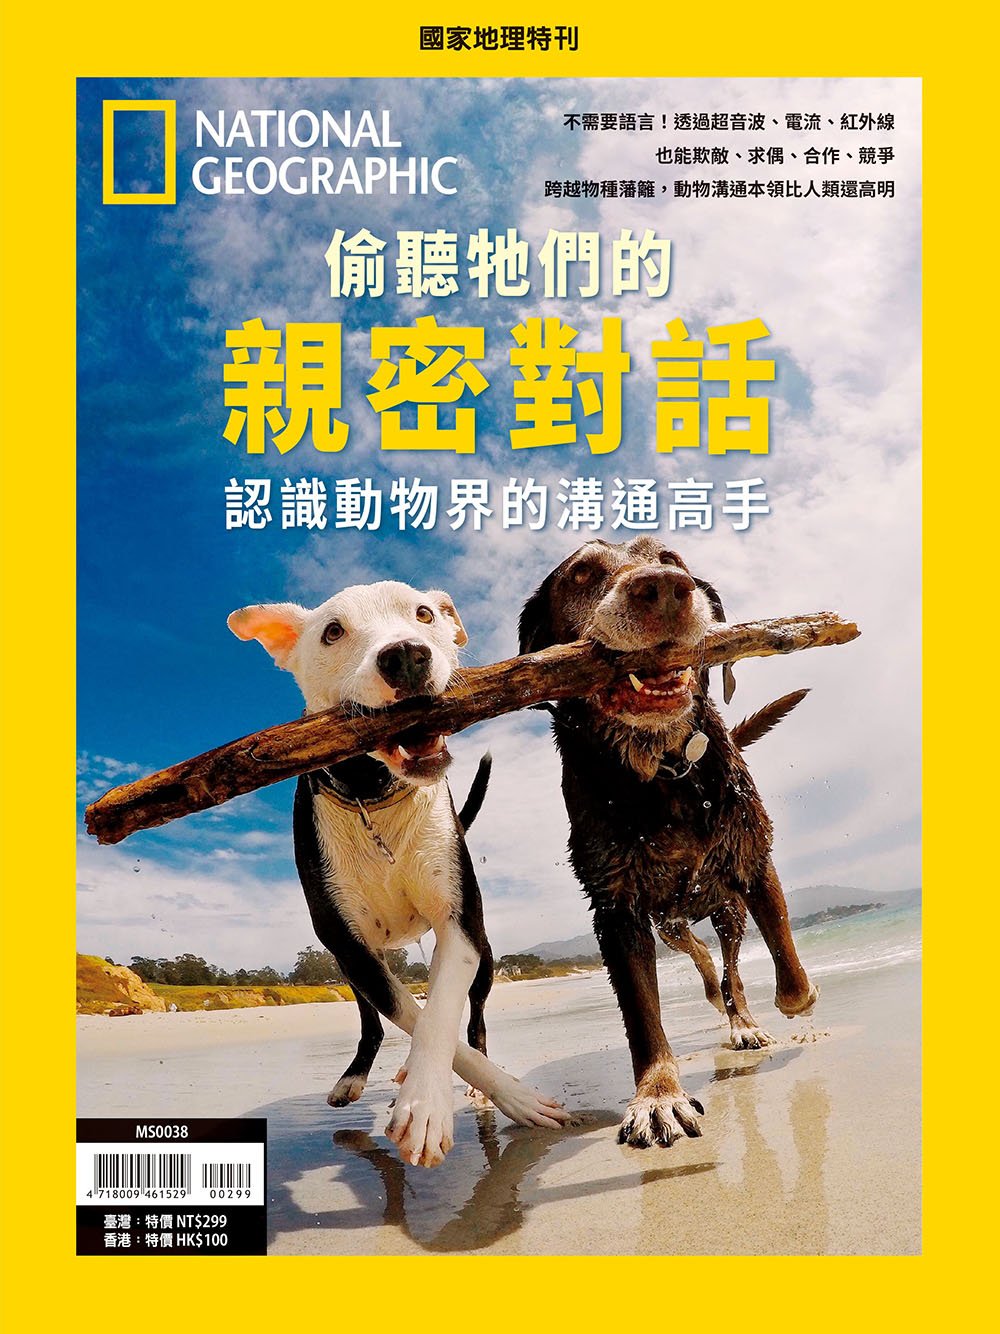 國家地理雜誌 中文版 紙本 訂閱 1年12期 合購 《偷聽他們的親密對話》特刊